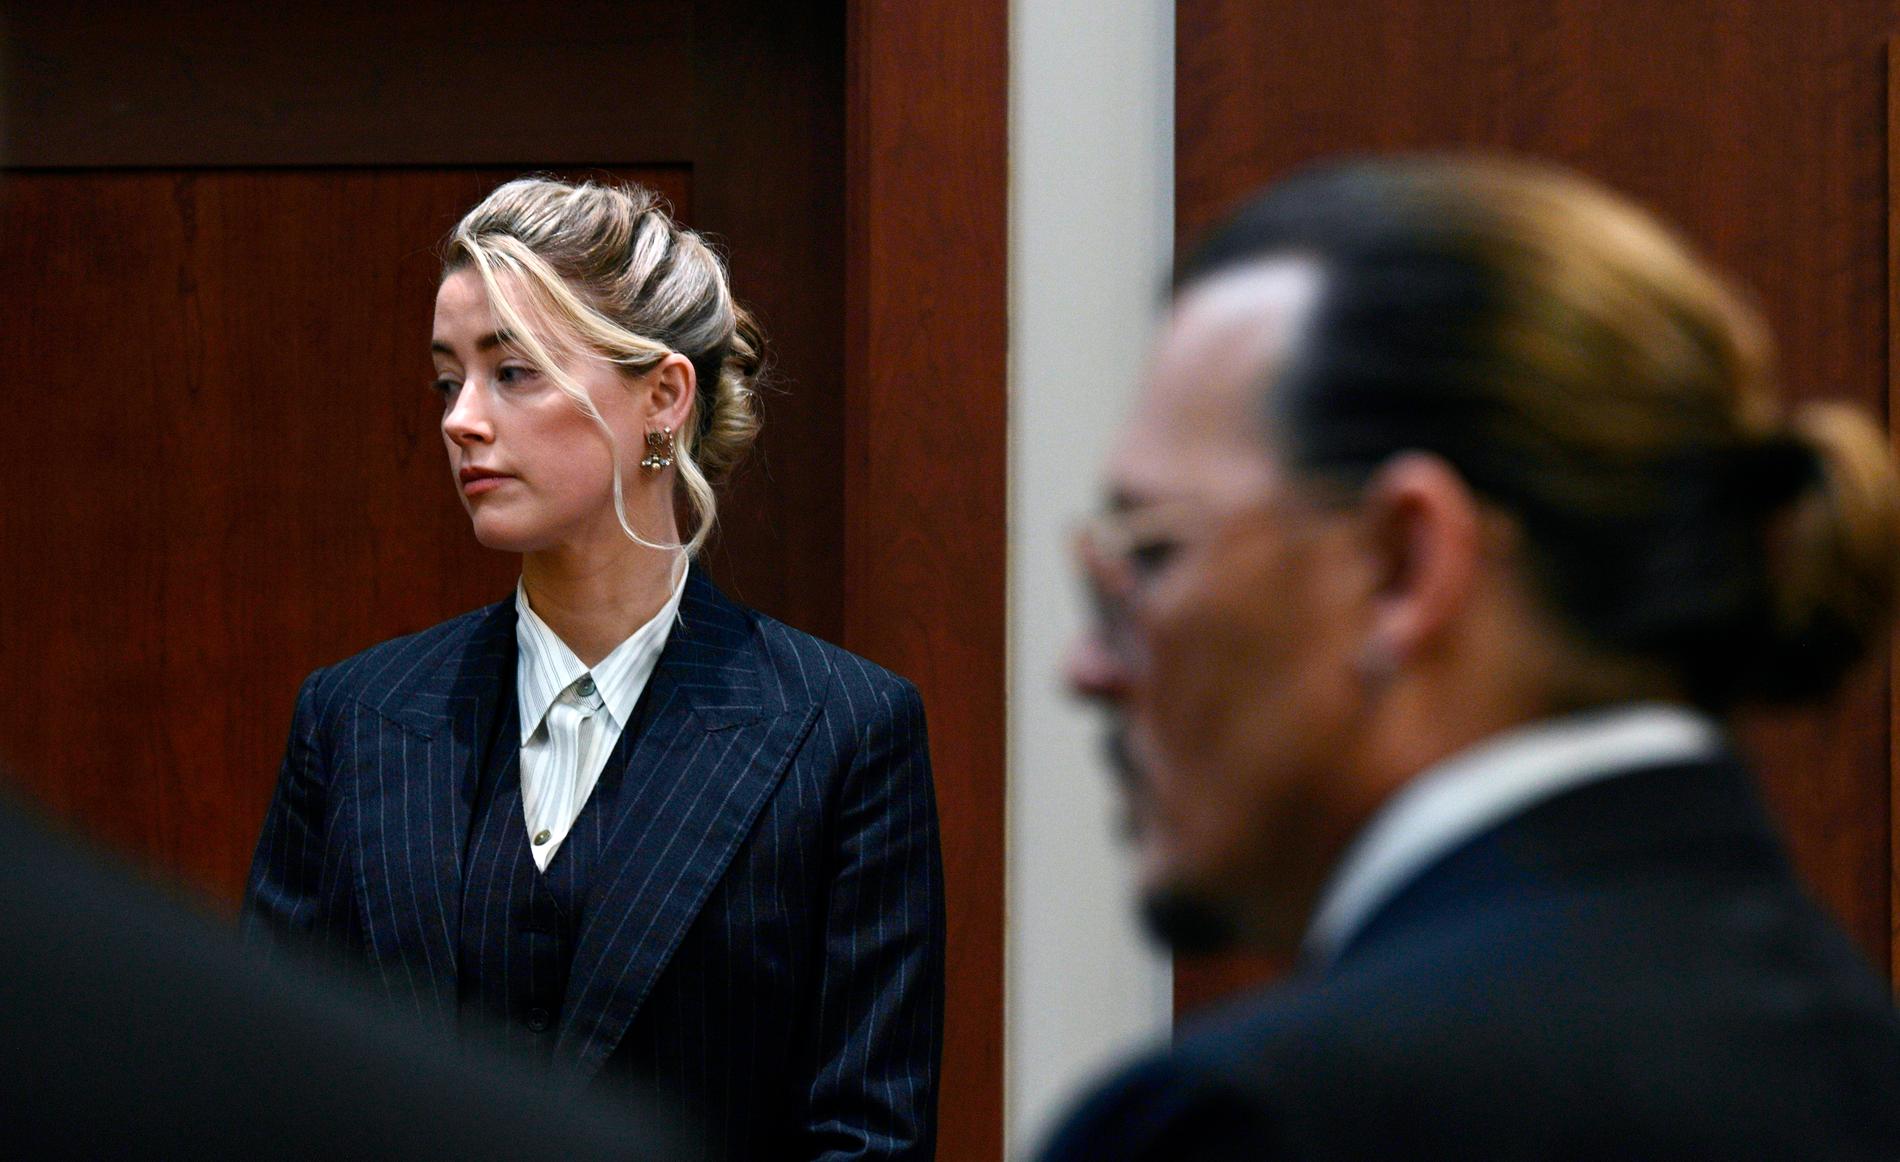 Skådepselarna Amber Heard och Johnny Depp i domstolen i Virginia i maj 2022. Mycket av materialet från den direktsända rättegången förekommer i dokumentären. Arkivbild.